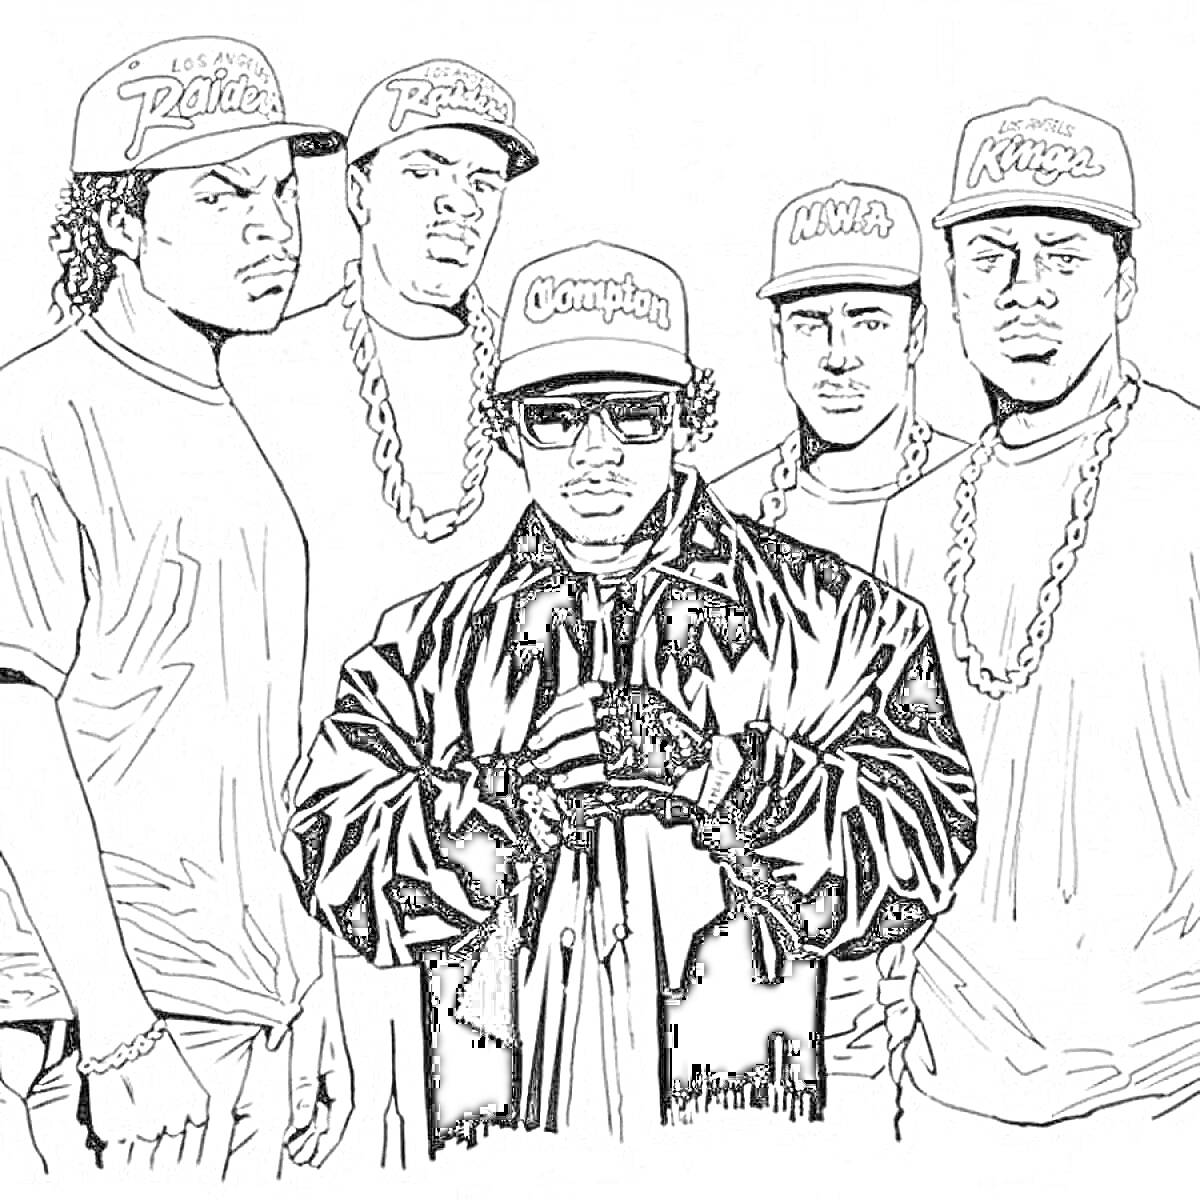 Раскраска Группа рэп-музыкантов с различными надписями на бейсболках и цепях